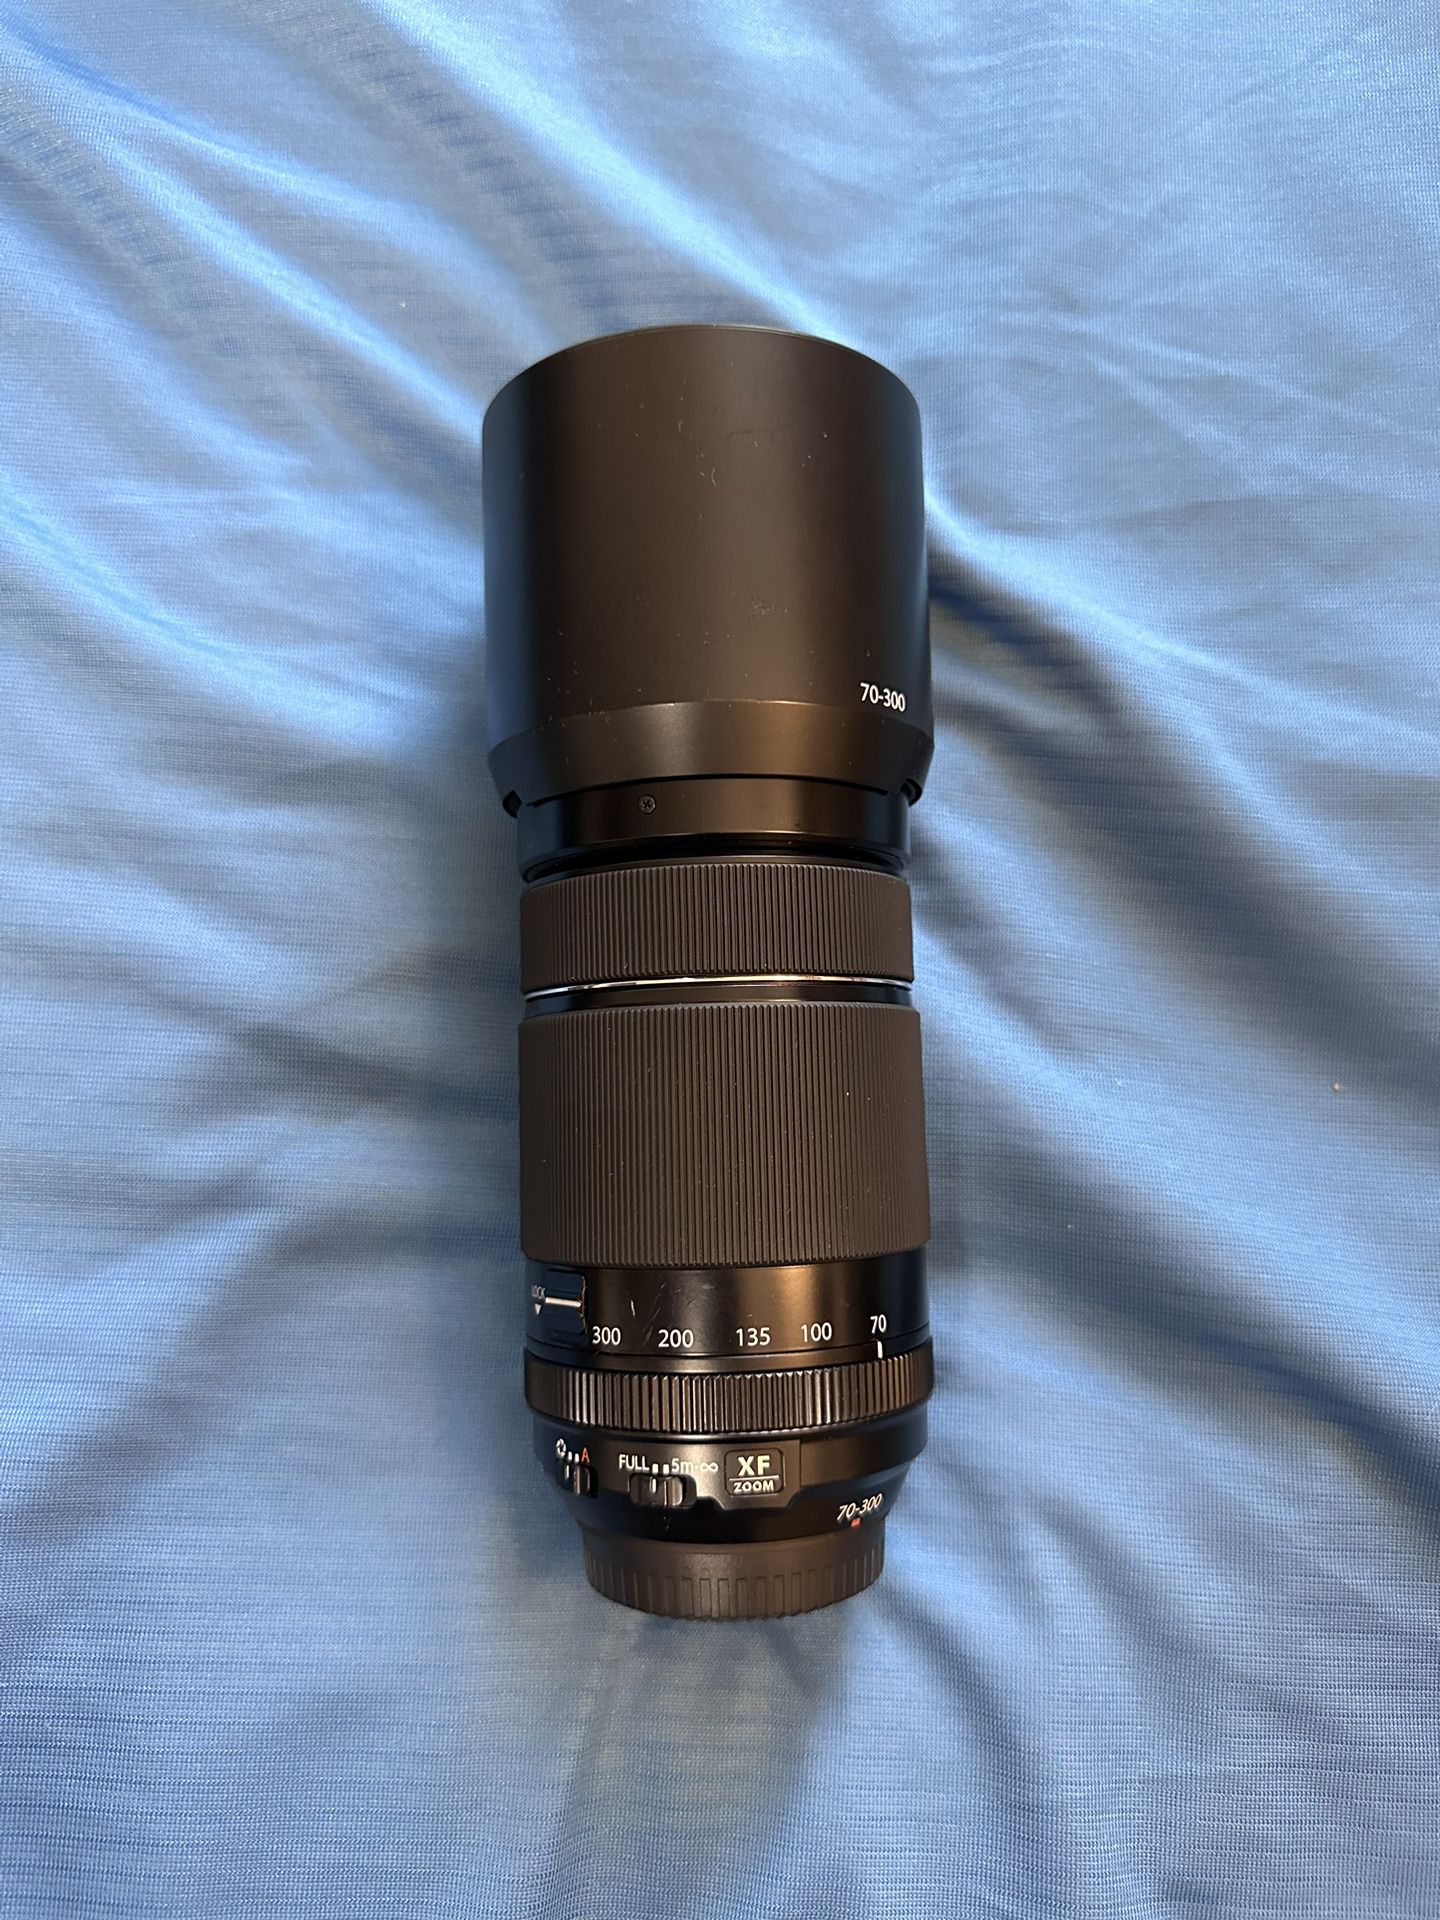 Fujifilm Camera Lenses And Peak Design Backpack